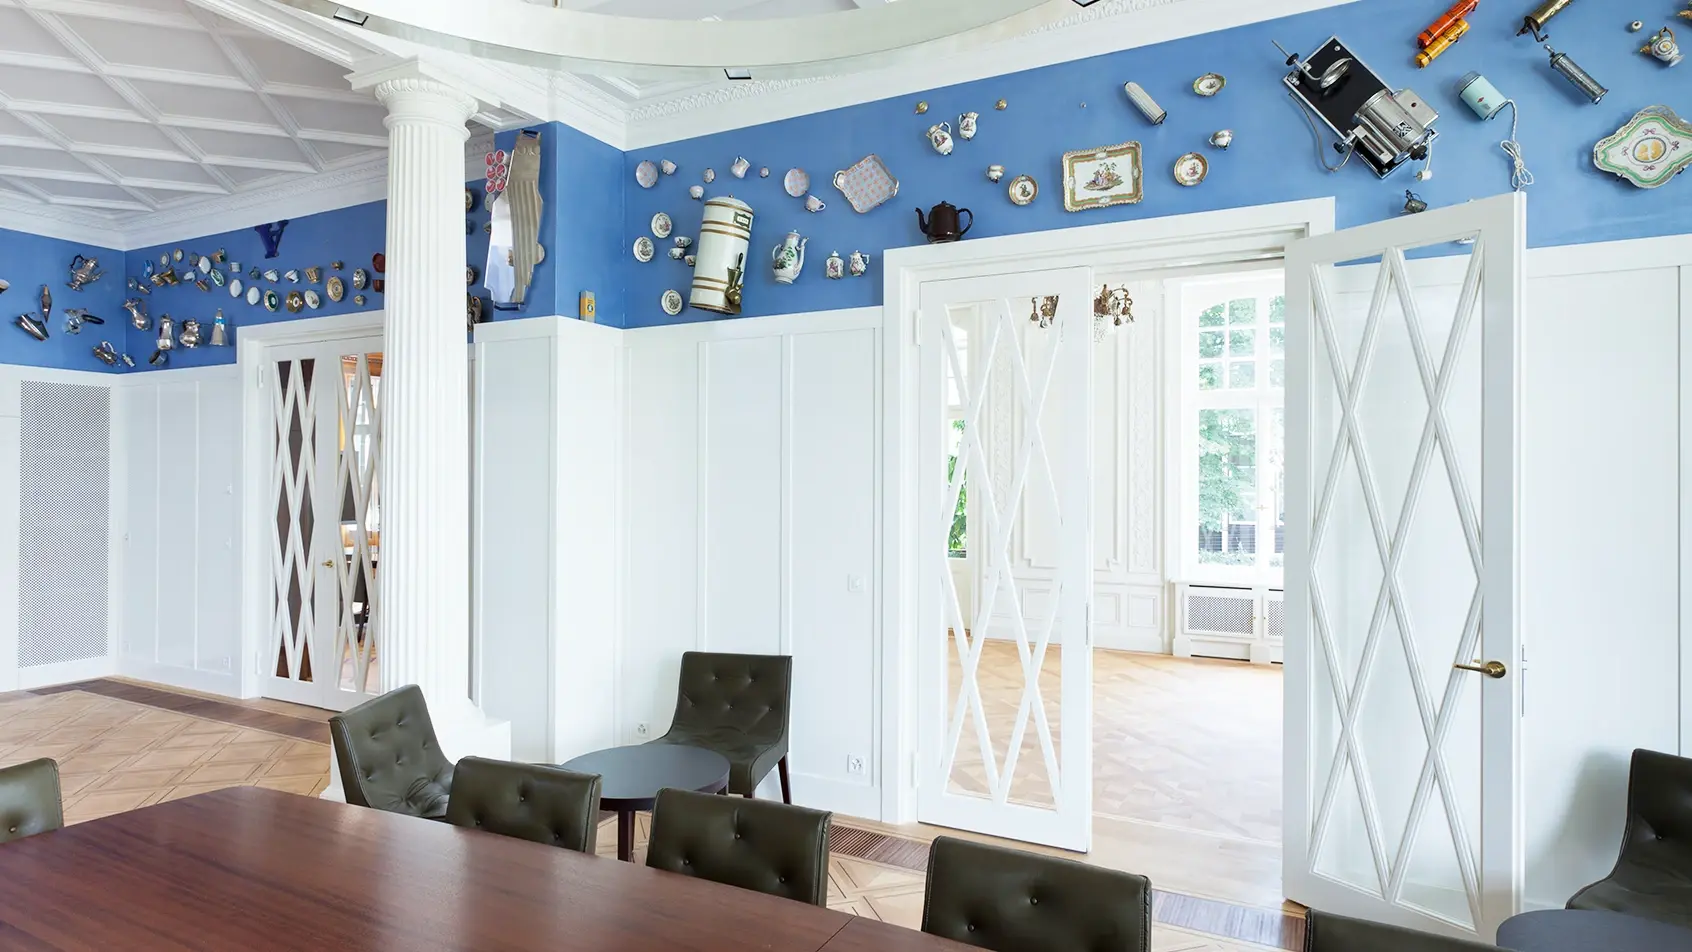 In der beeindruckenden Halle des Jacobs Hauses befindet sich ein mit Objekten aus der Sammlung von Klaus J. Jacobs gefüllter Fries. Diese Objekte – vom Thonet-Stuhl bis zum Melitta-Filter – zeugen von der reichen Geschichte des Hauses.